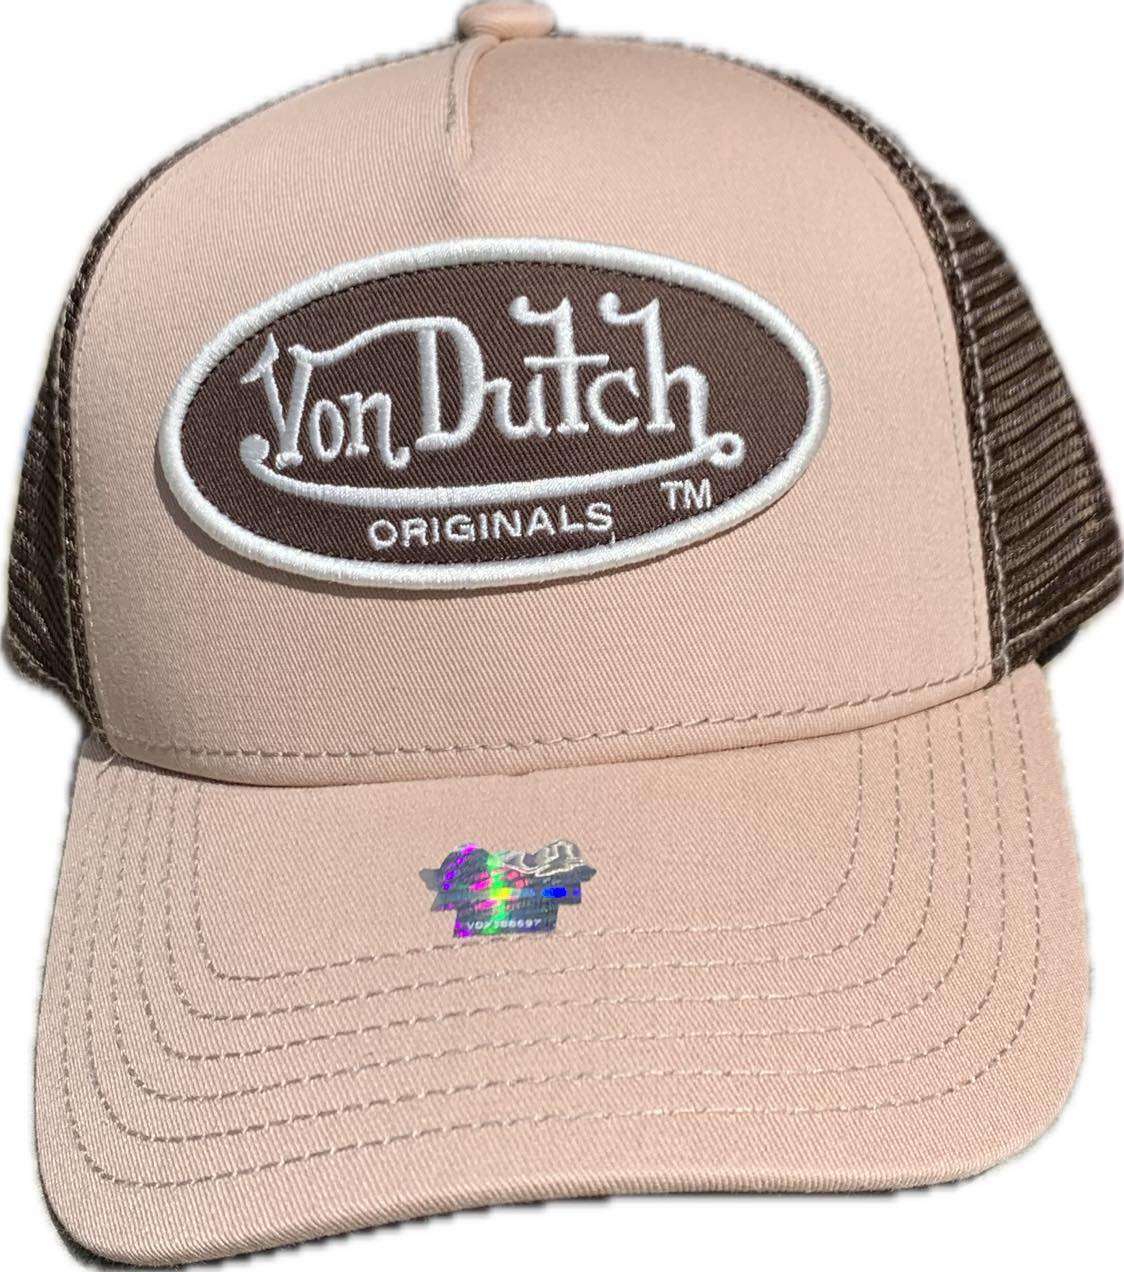 Von Dutch Boston Trucker Cap - Powder / Brown